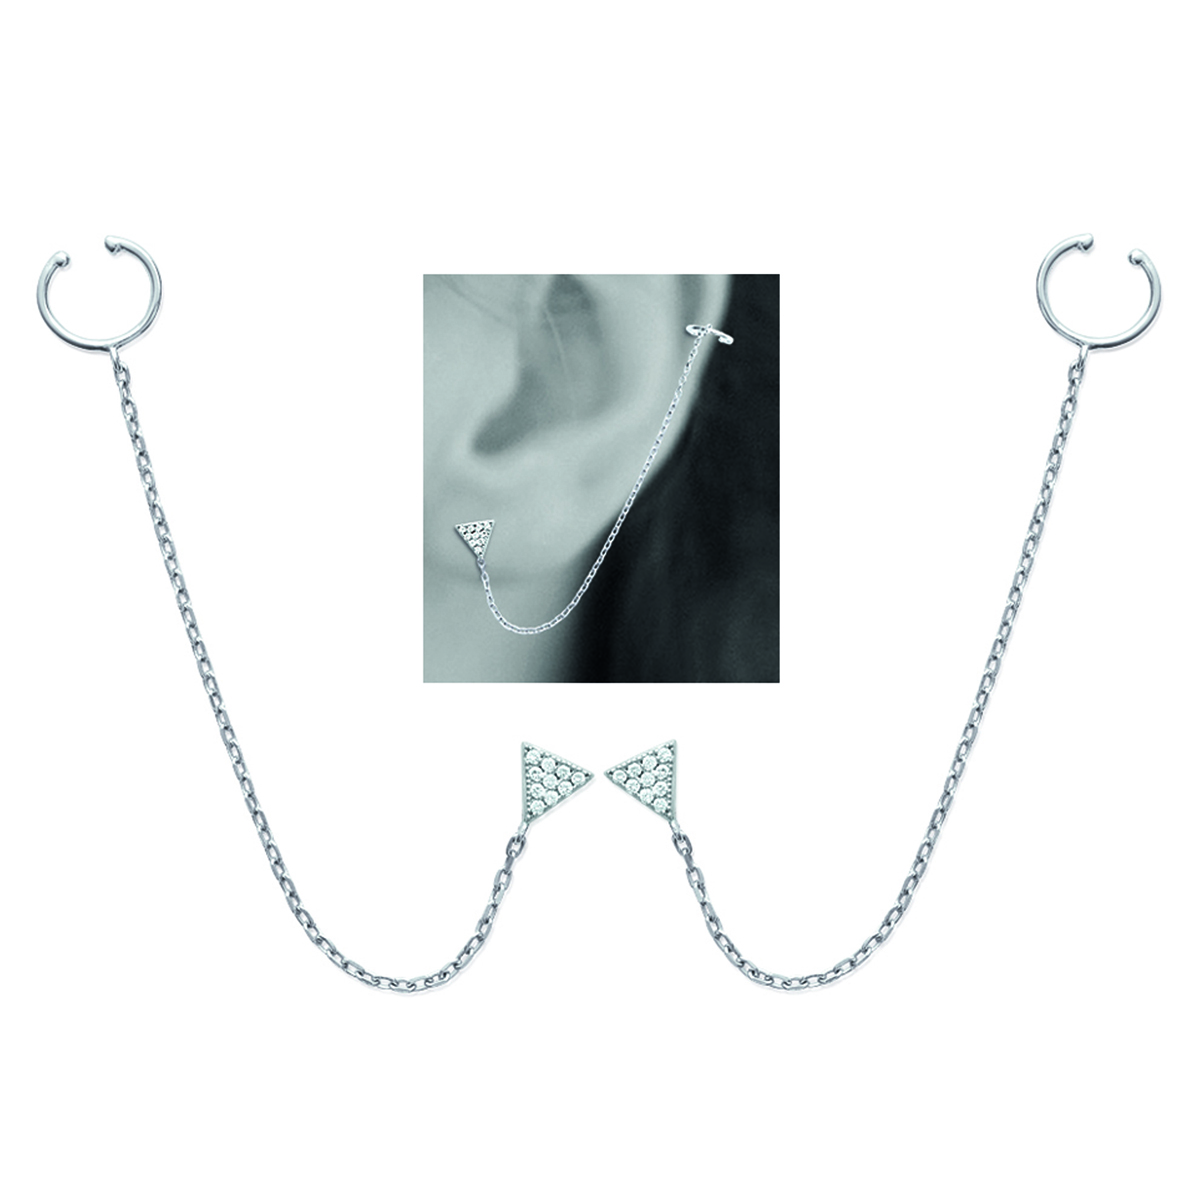 Boucles bagues oreilles argent \'Triangles\' blanc argenté (rhodié) - 5x5 mm - [M9929]